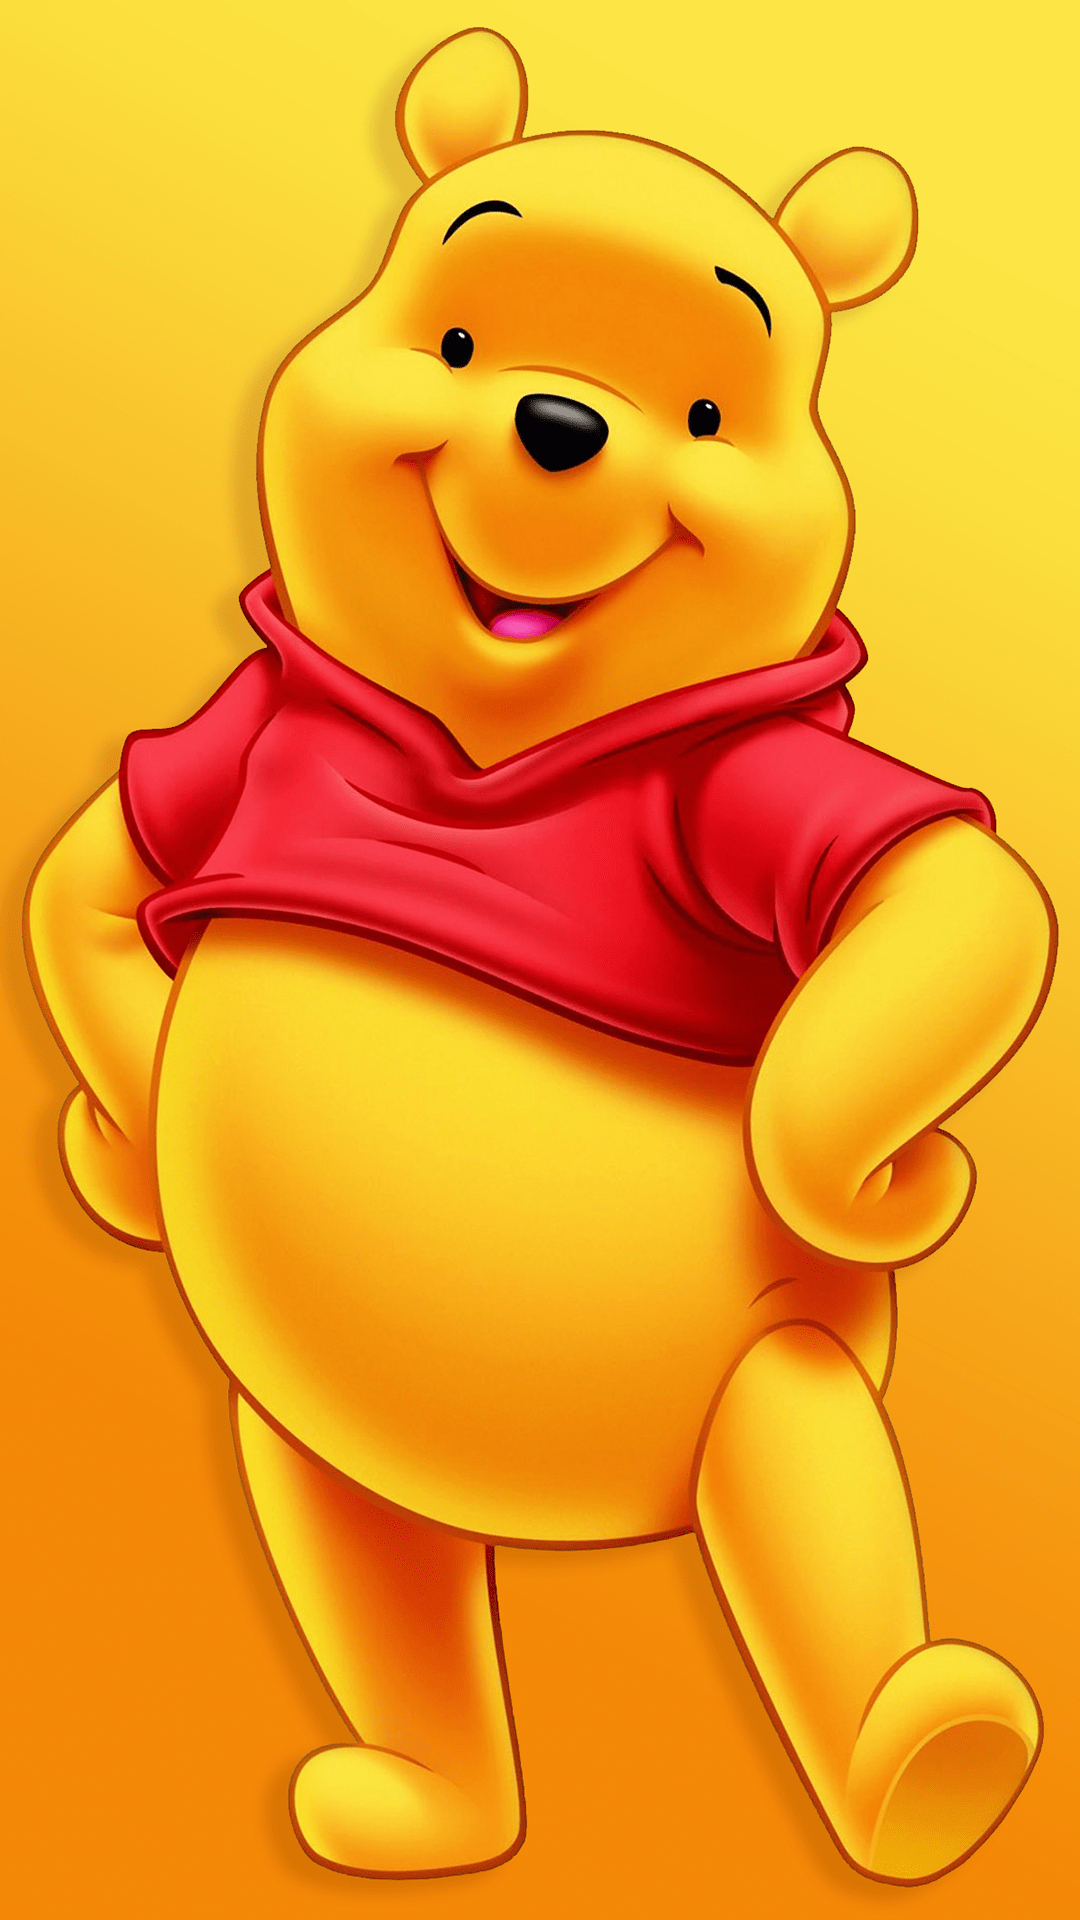 1080x1920 Winnie The Pooh Wallpaper